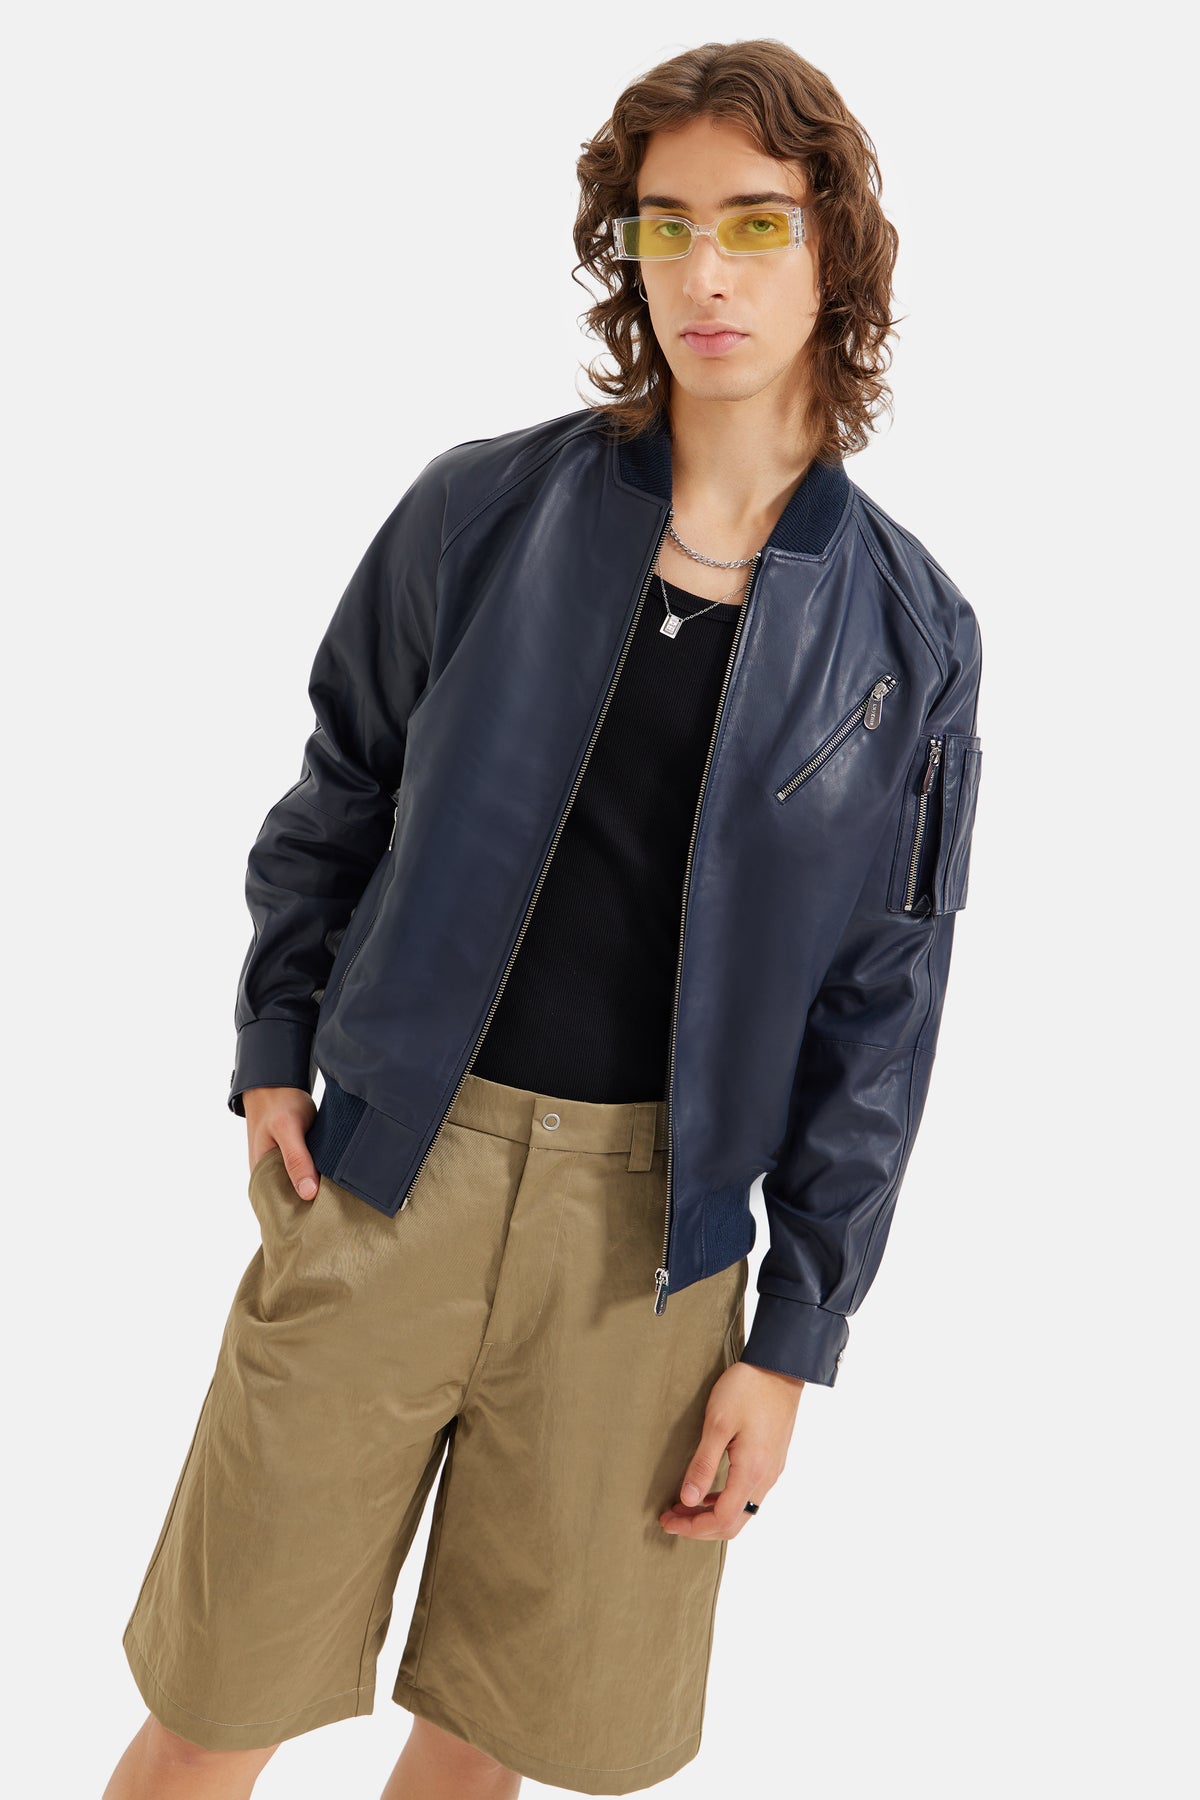 Rider - Utility Bomber Leather Jacket - Navy Blue